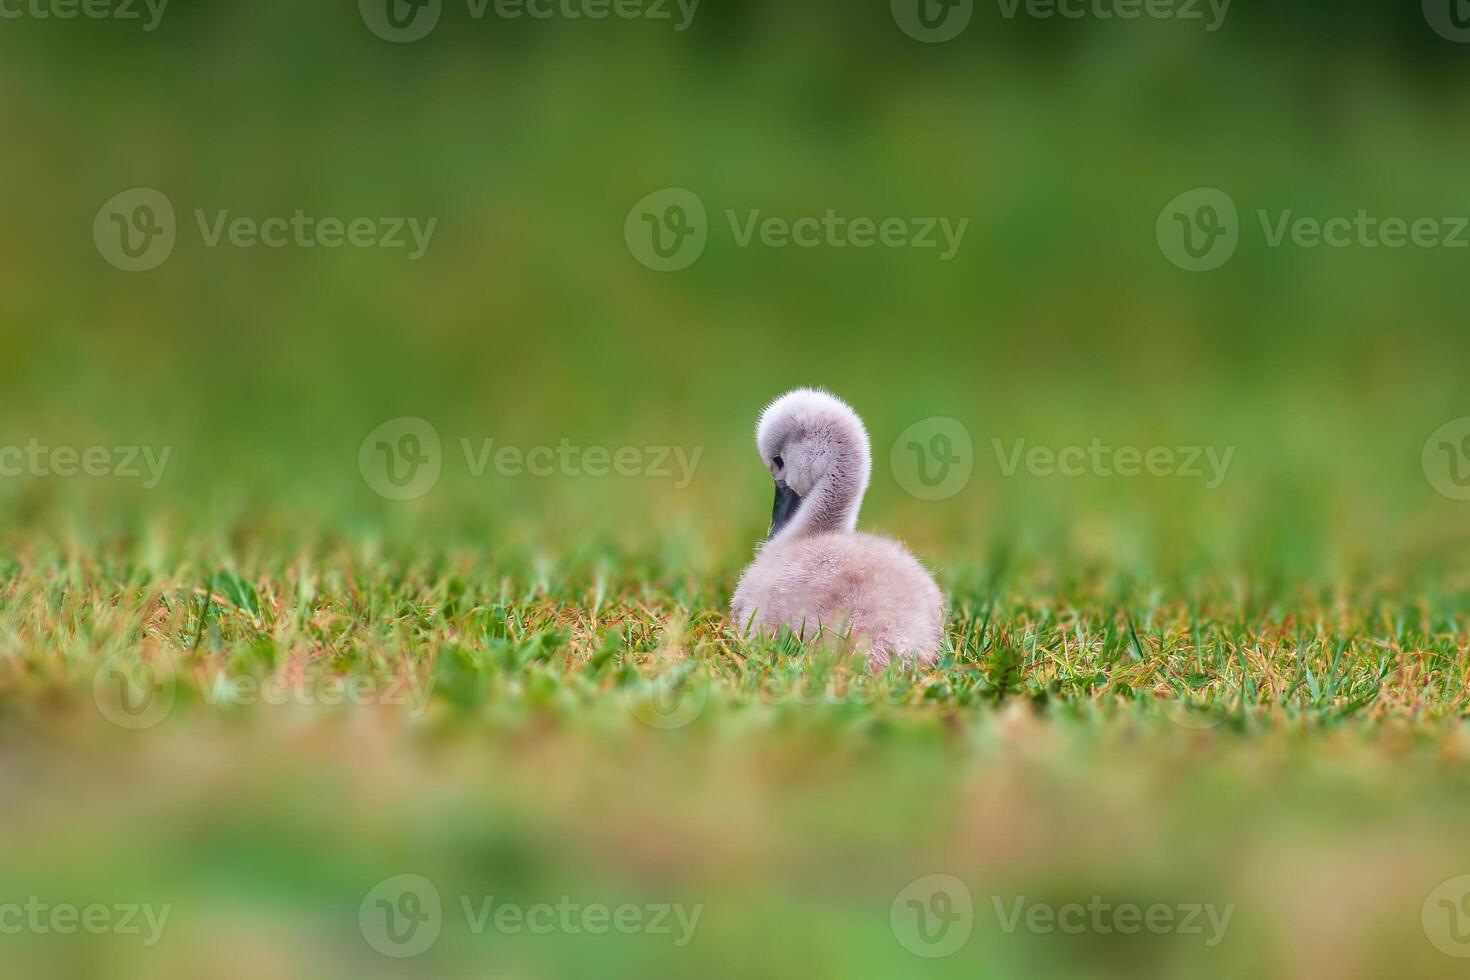 jovem cisne pintinho em uma verde banco foto